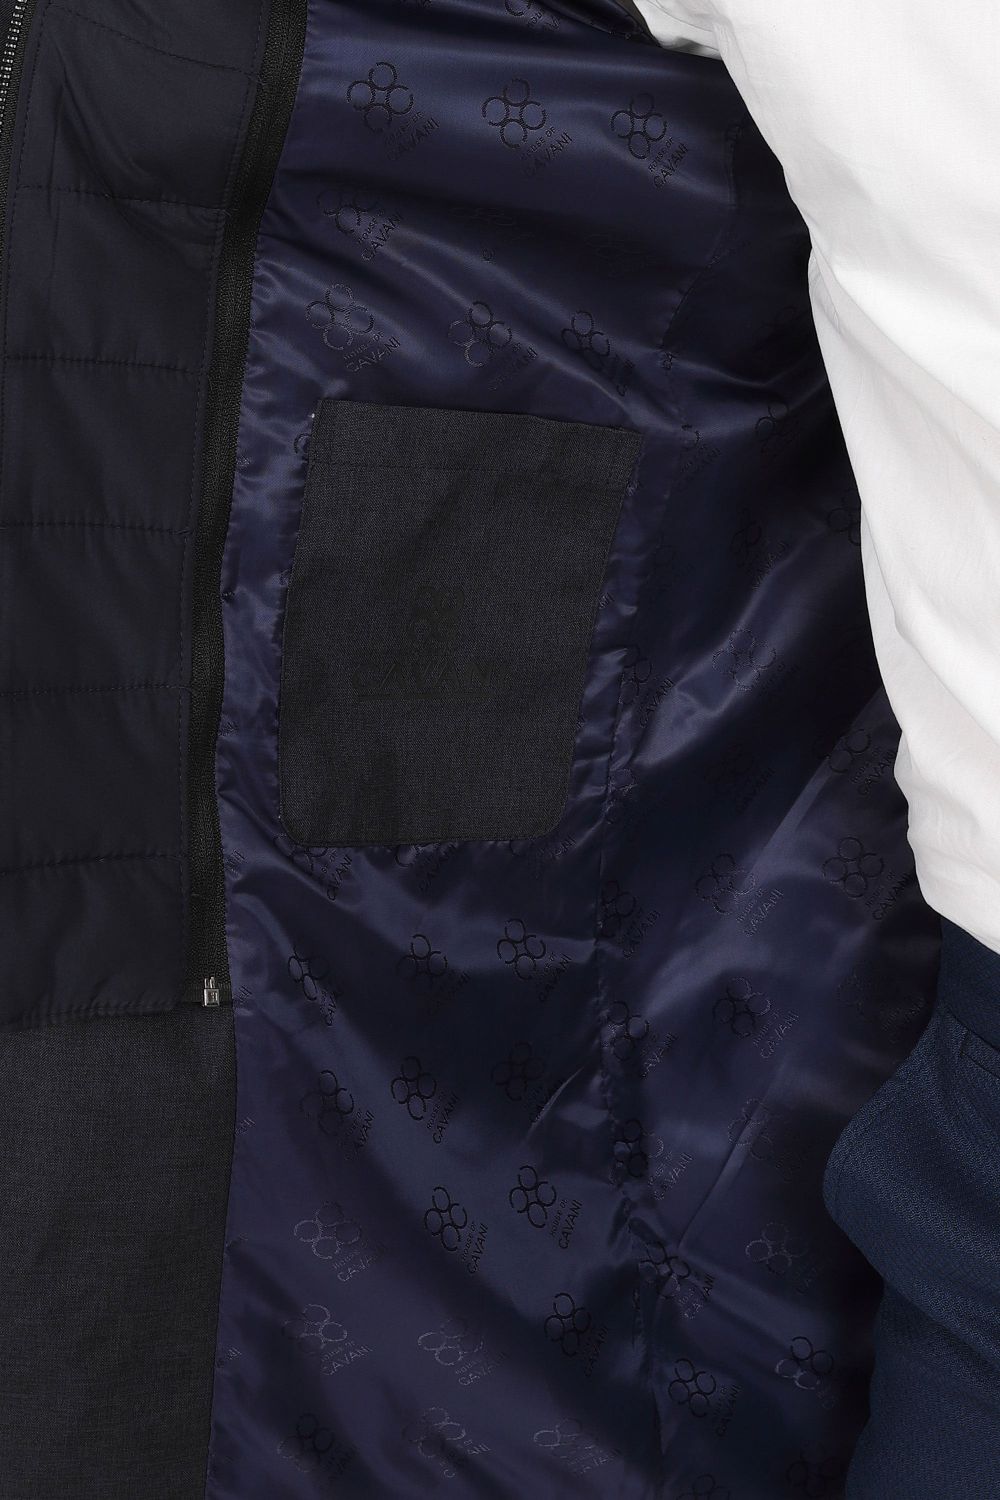 Cavani Brando Navy Mac Coat Overcoat 